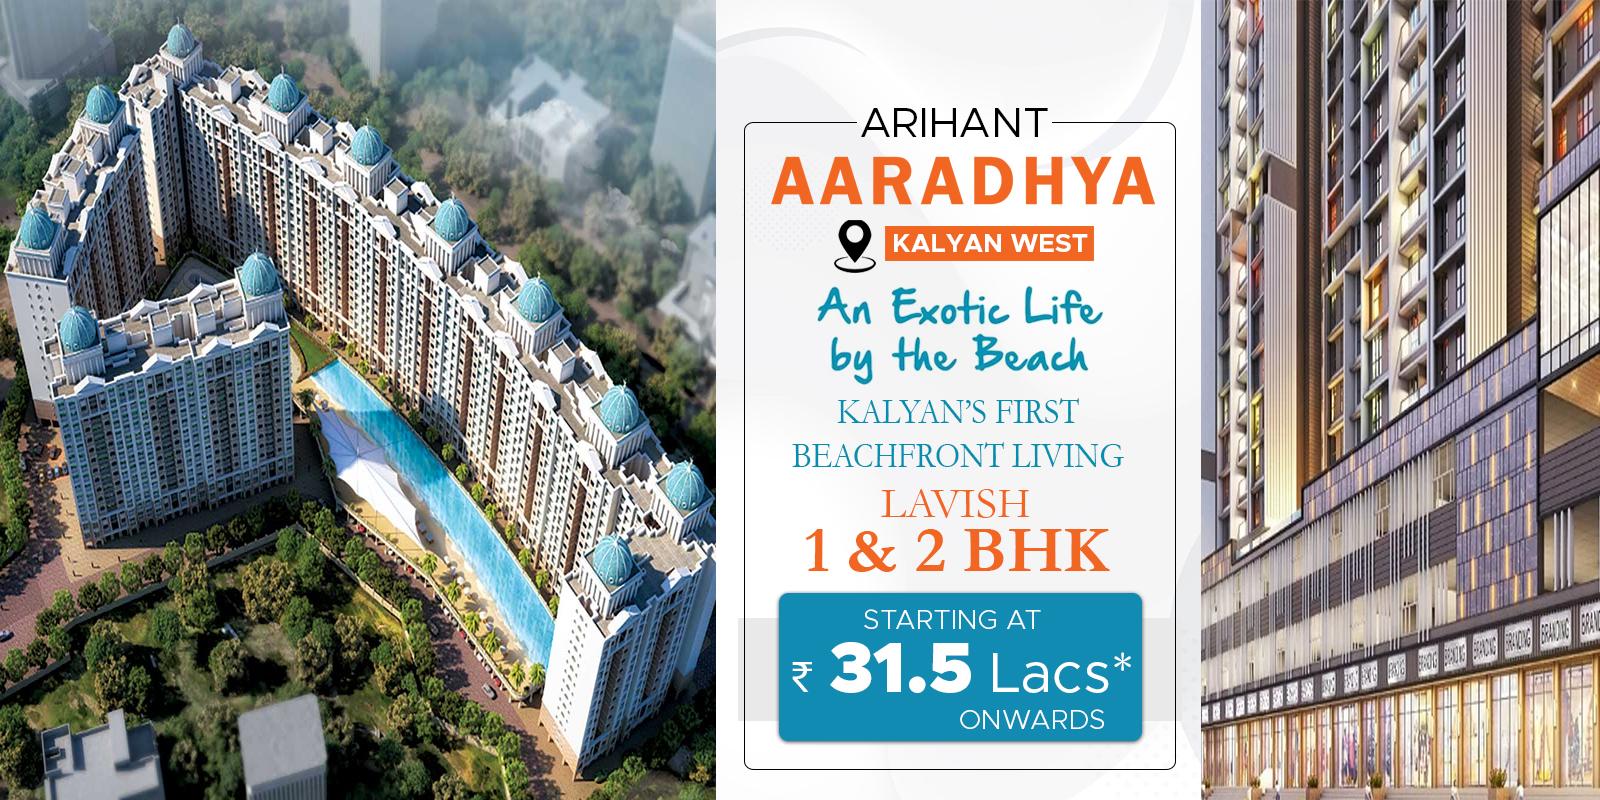 Arihant Aaradhya Kalyan West-arihantaaradhya-banner.jpg